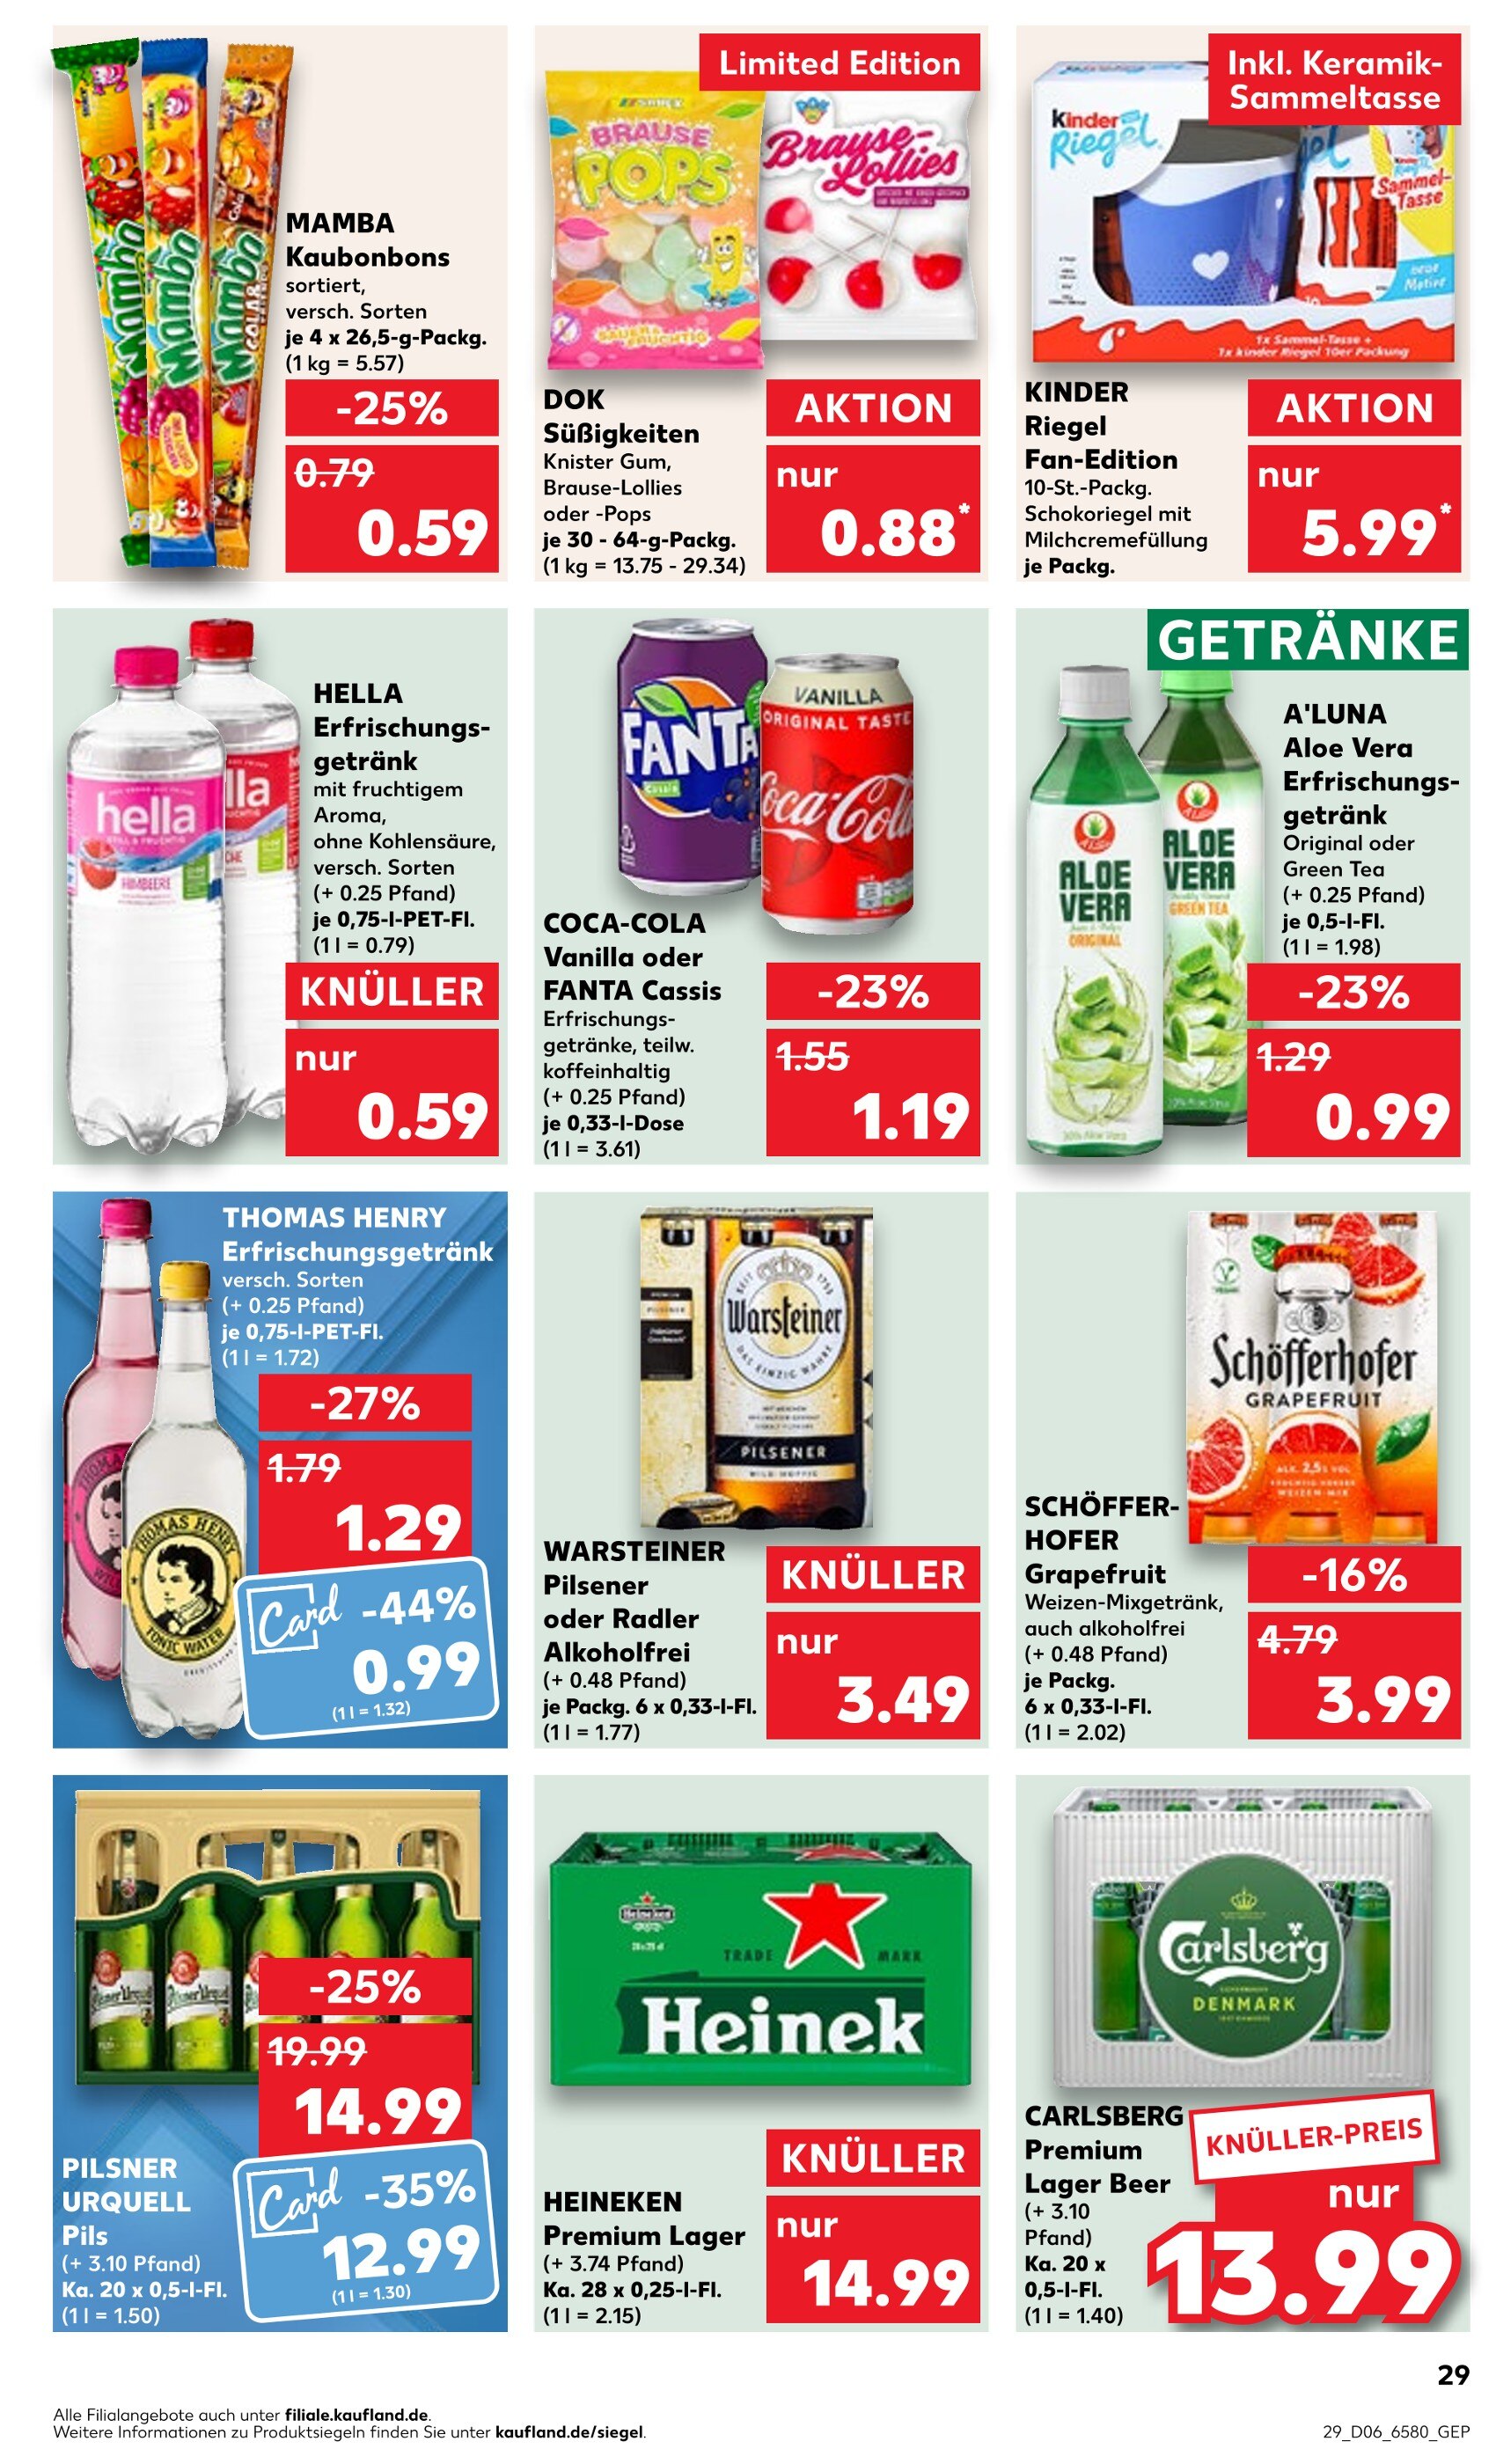 33% billiger Coca-Cola bei Edeka Nordbayern Sachen Thüringen - MyTopDeals